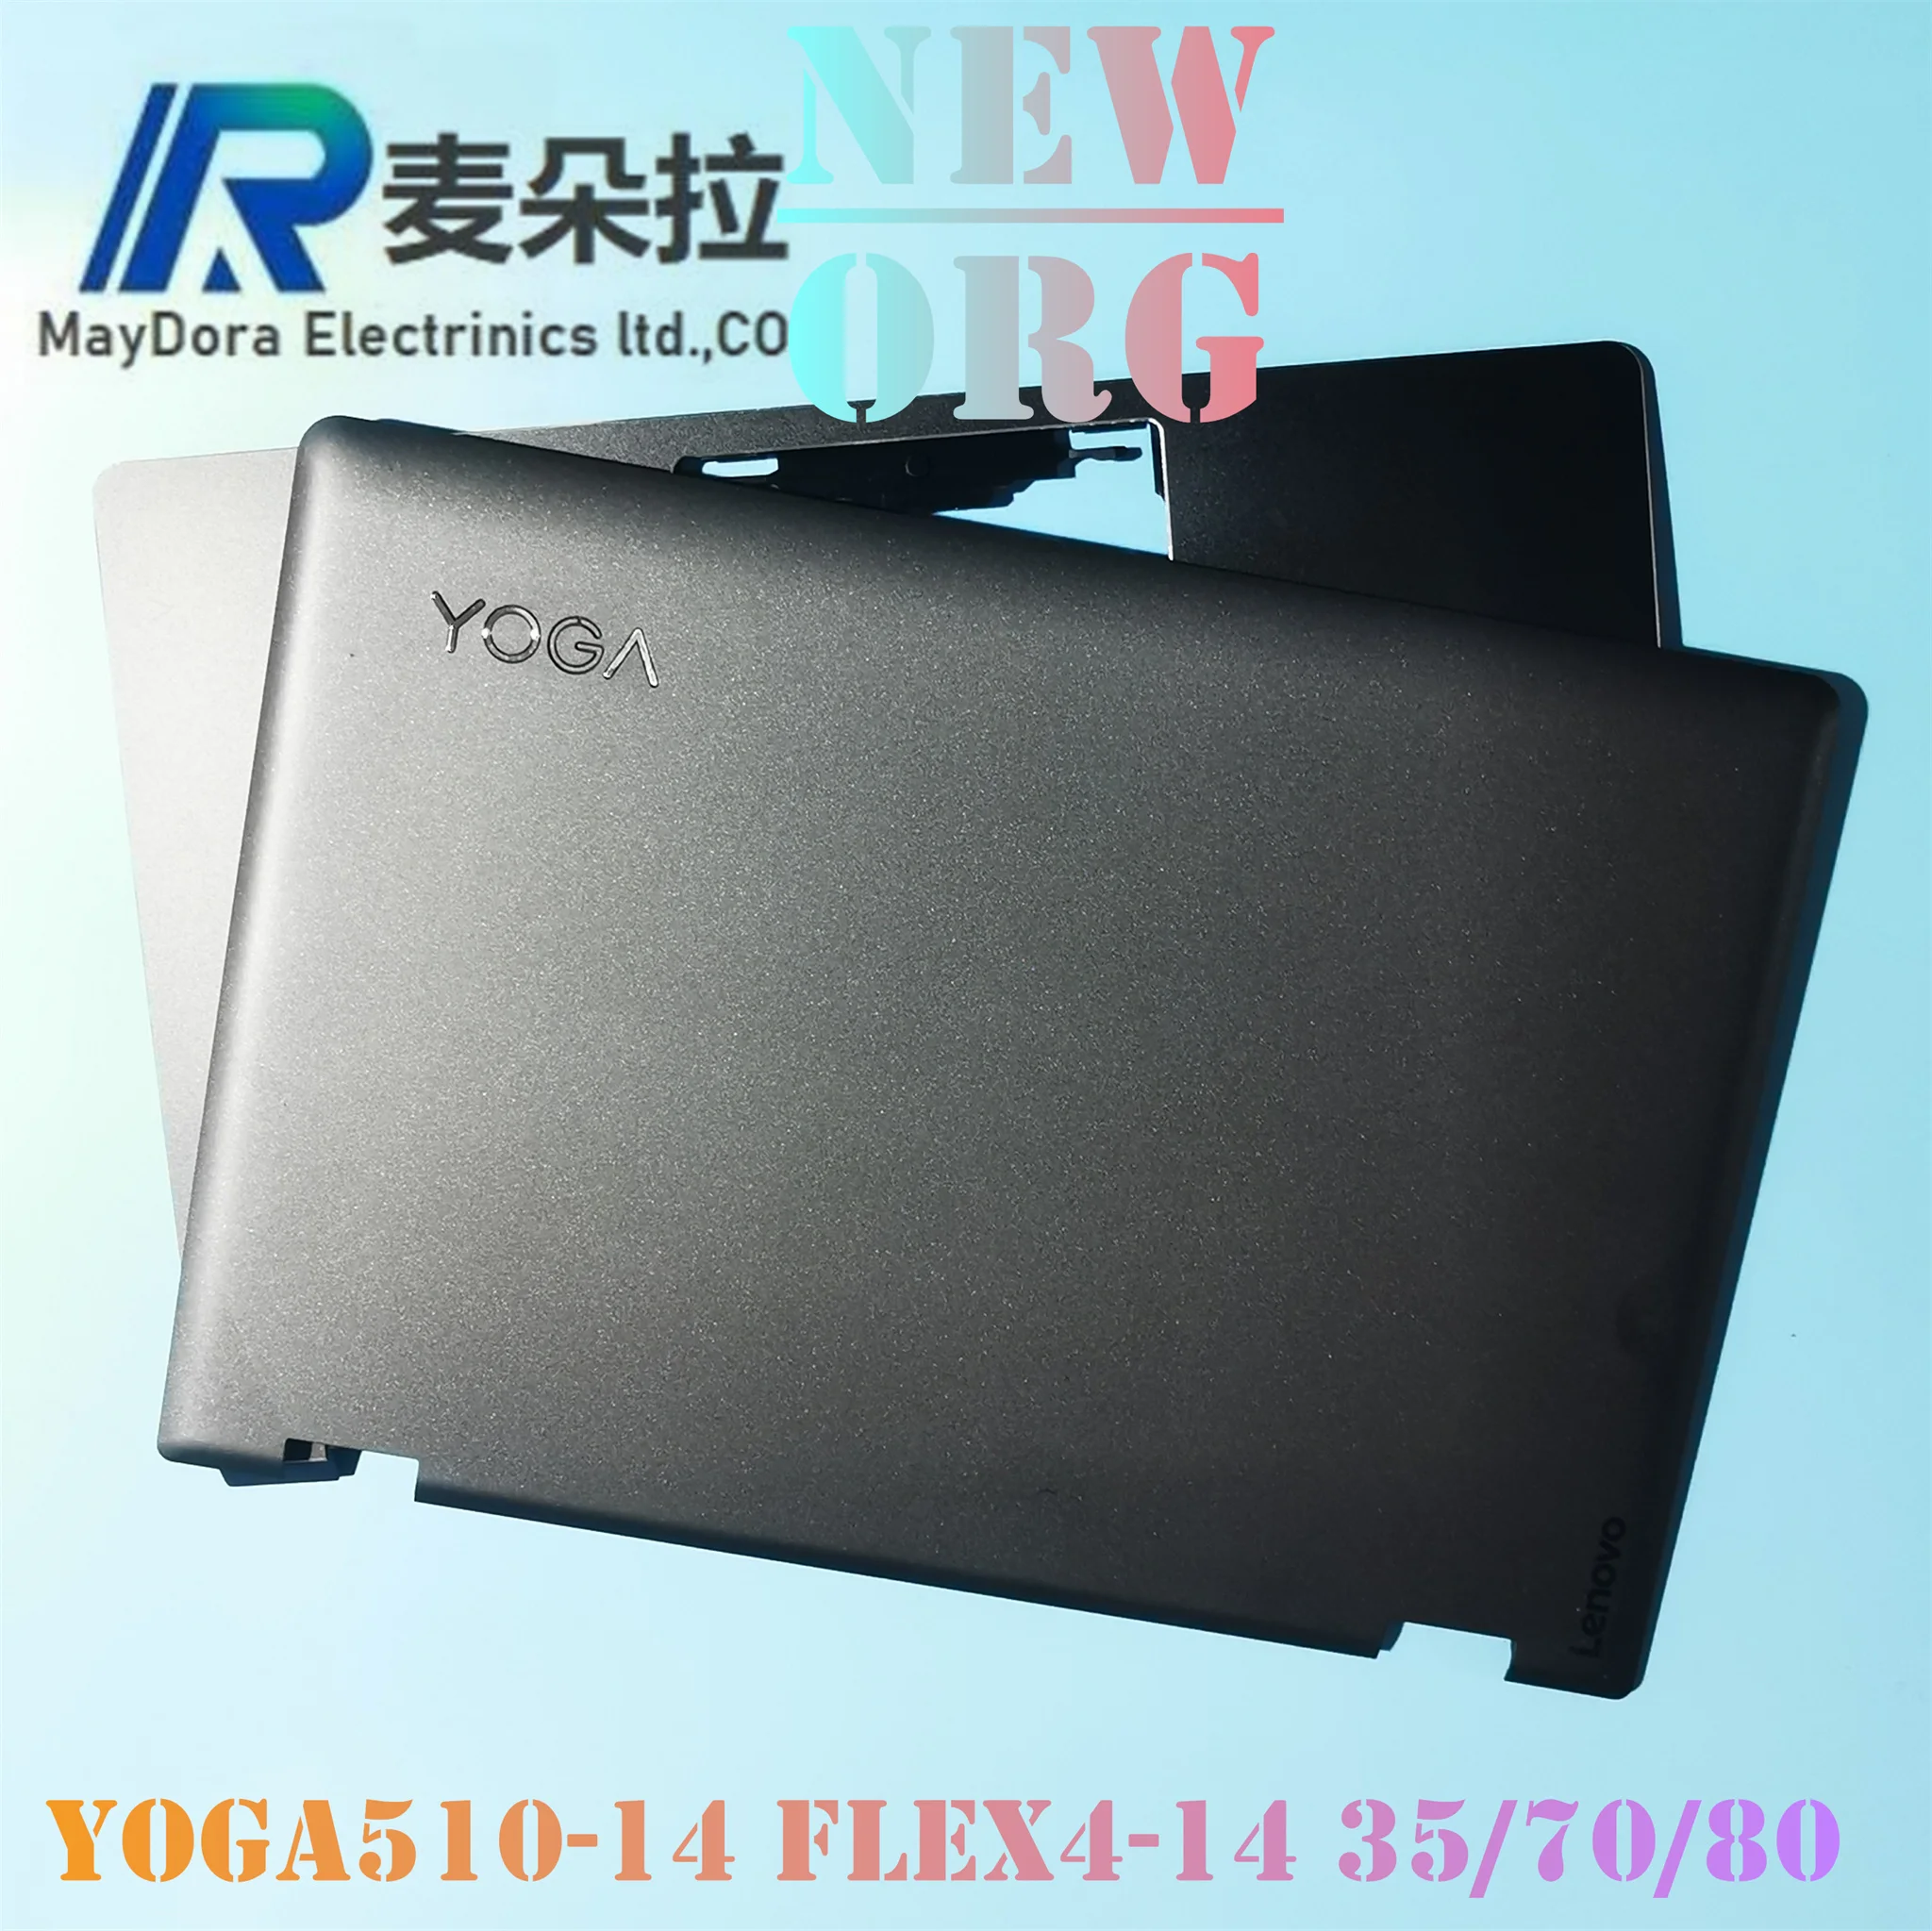 

Новый орг чехол для ноутбука LENOVO YOGA 510-14 ISK IKB FLEX 4-1470 1480 1435, задняя крышка для ноутбука/Упор для рук, черный